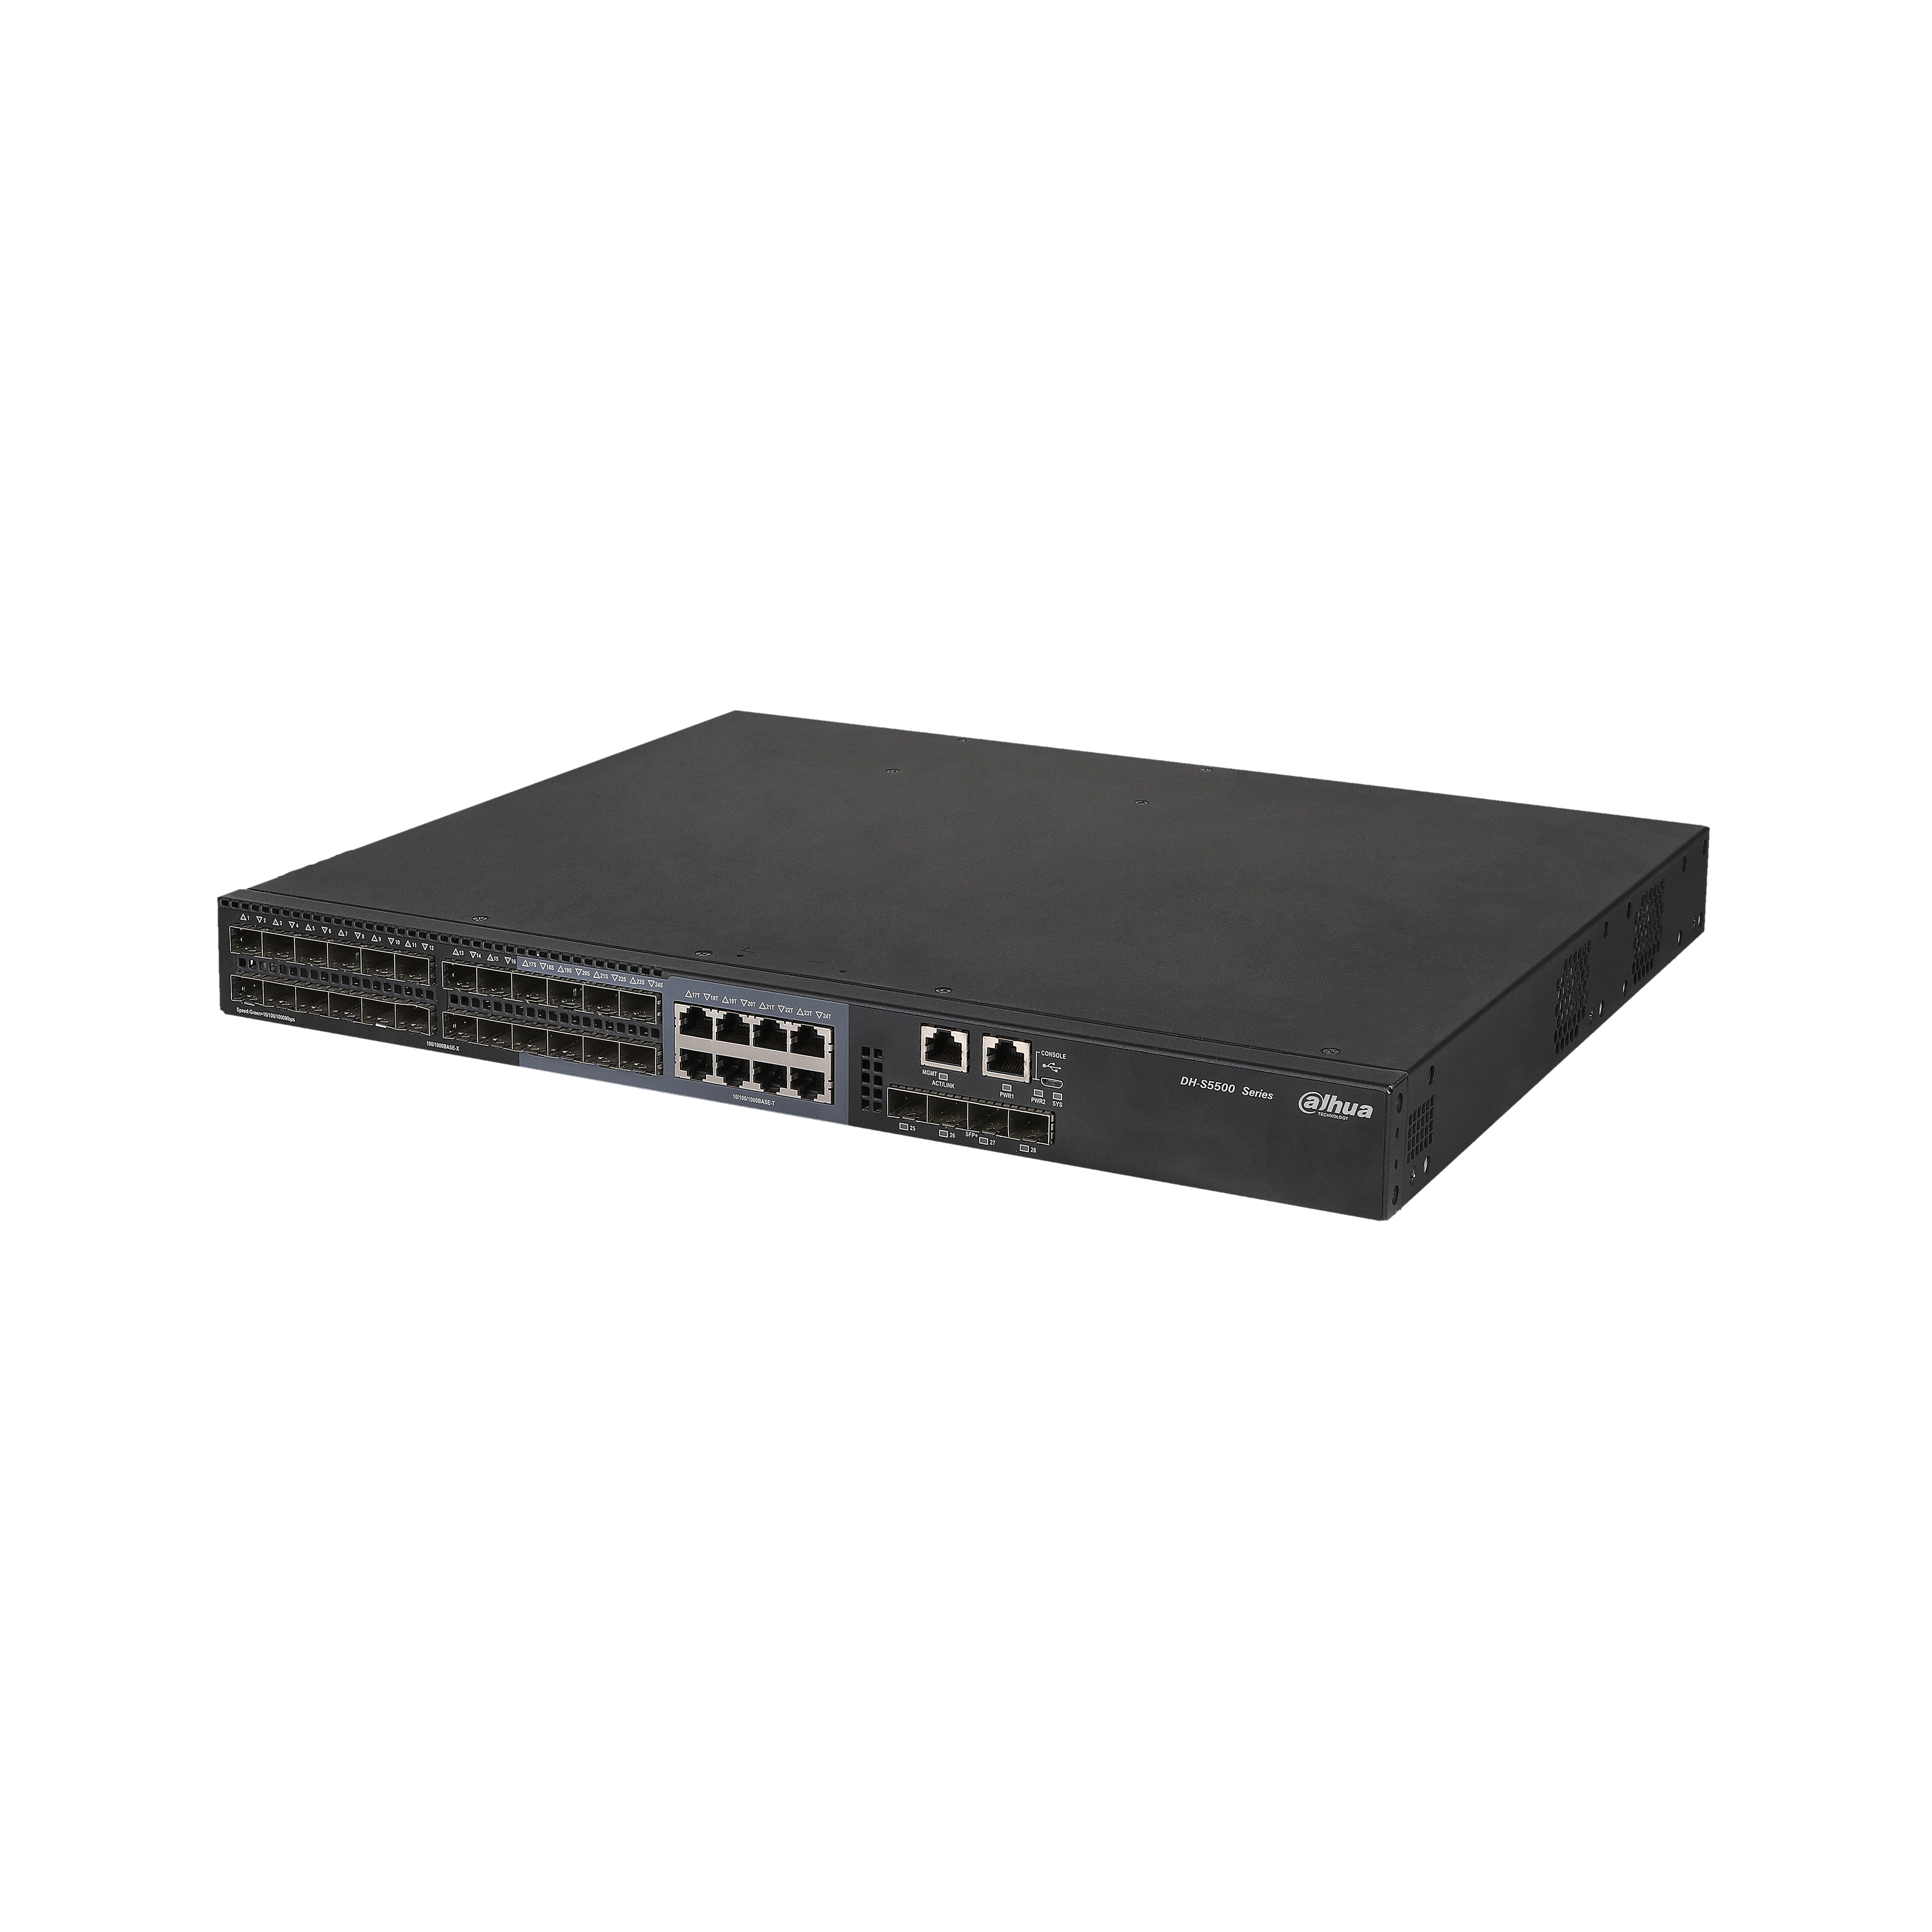 DAHUA S5500-24GF4XF-E 28-Port Managed Gigabit Switch with 24-Port GSFP and 4-Port 10G SFP+